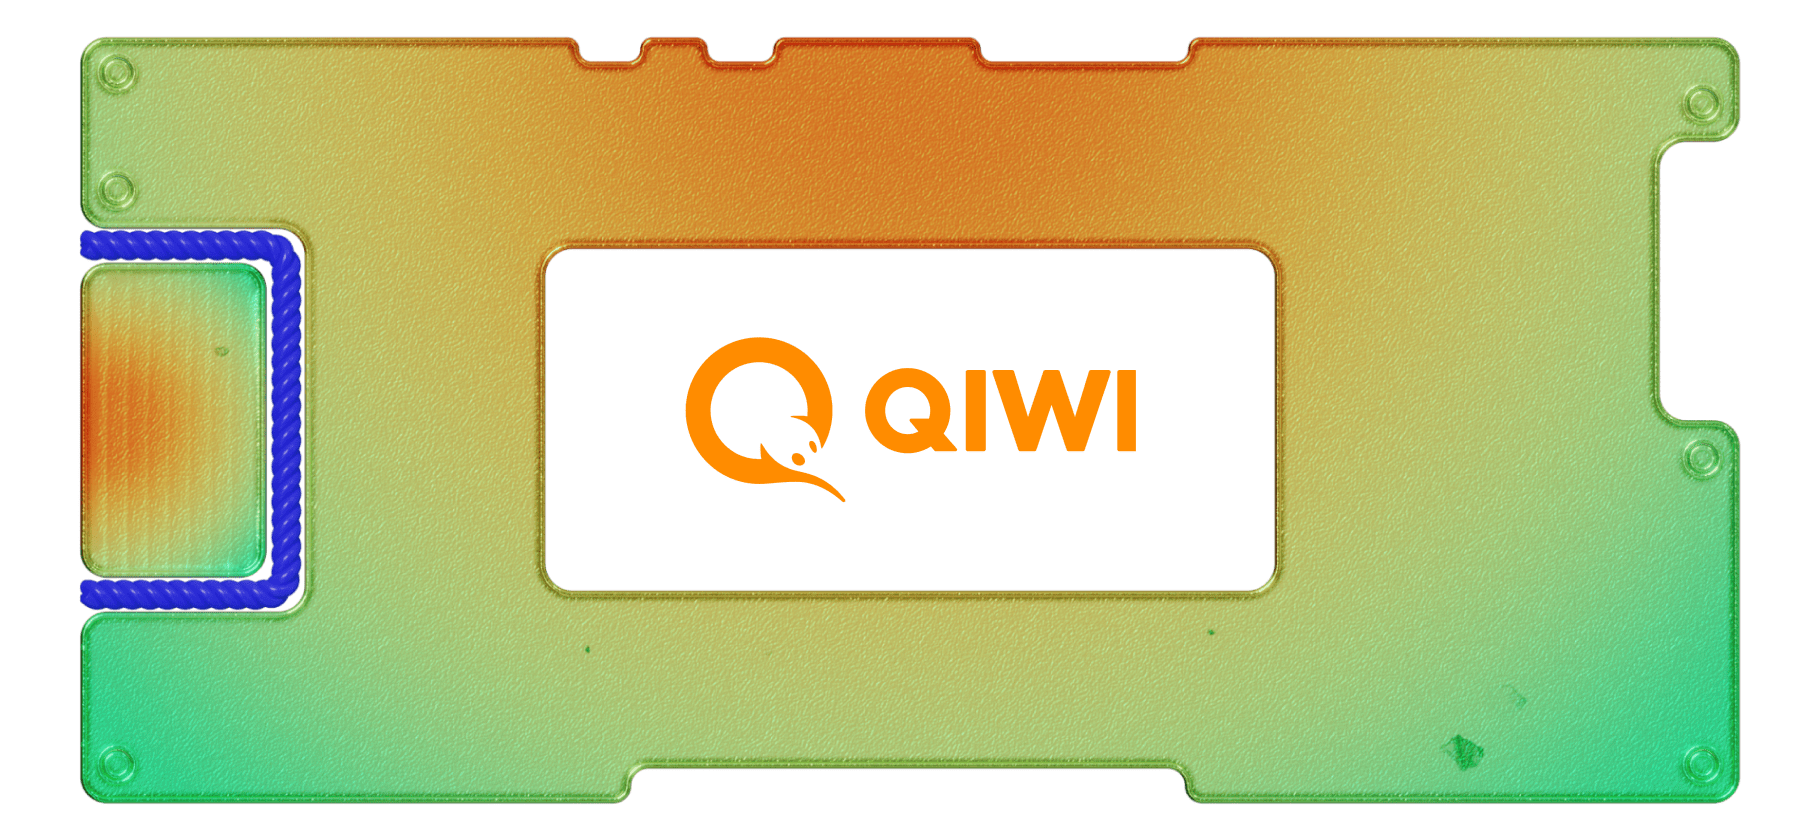 Qiwi планирует разделить свой бизнес. Что нужно знать инвесторам